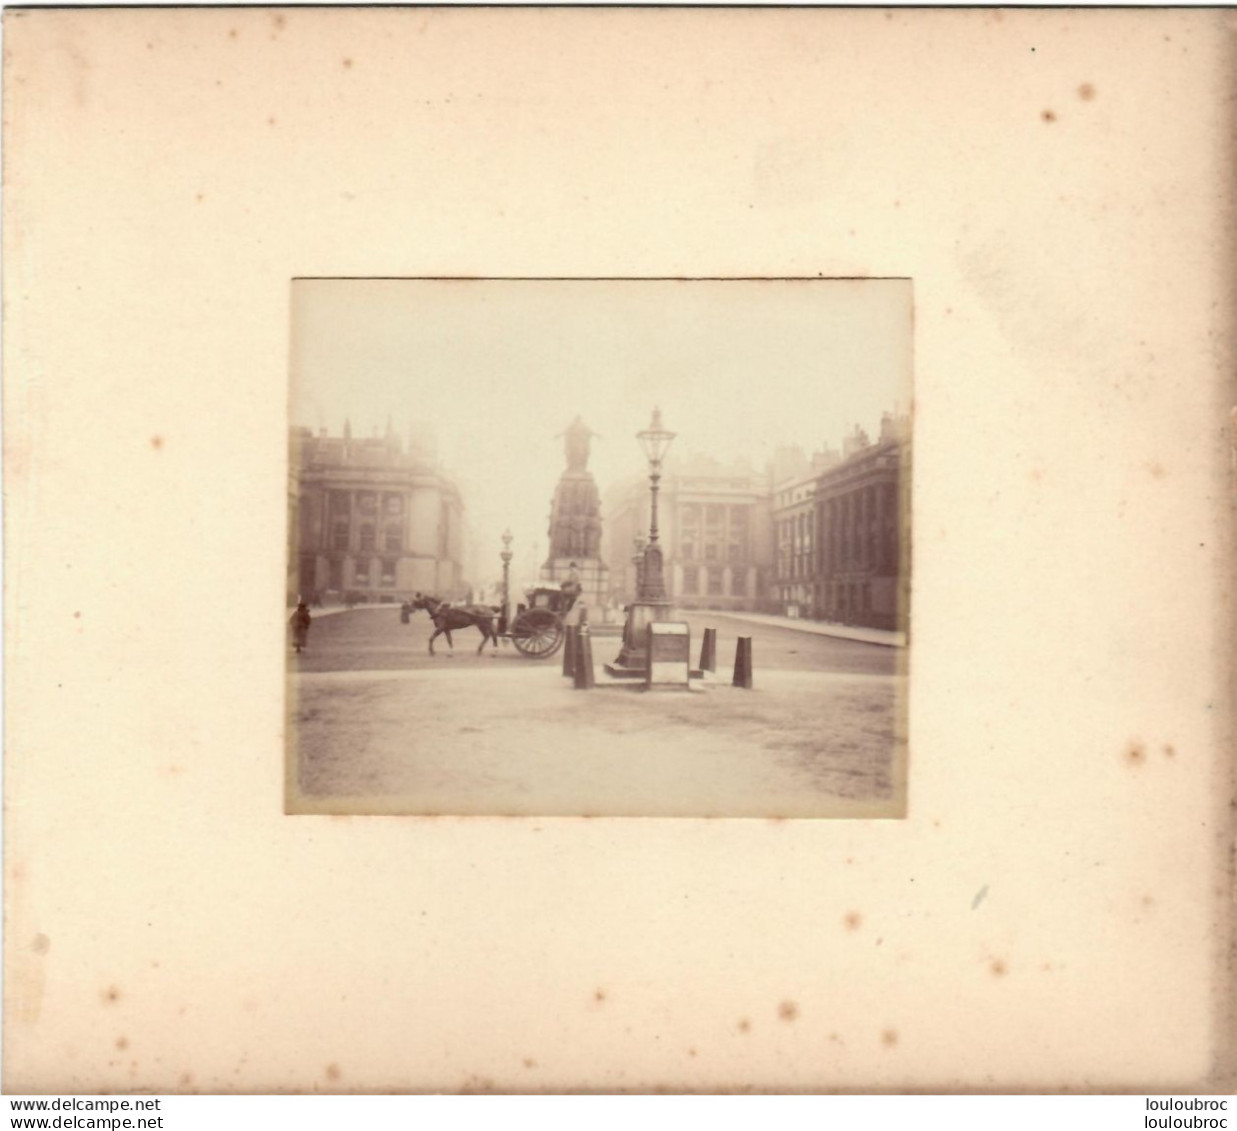 LONDRES MONUMENT DE CRIMEE  FIN 19em PHOTO ORIGINALE 8x7CM COLLEE SUR CARTON DE 18x13cm - Oud (voor 1900)